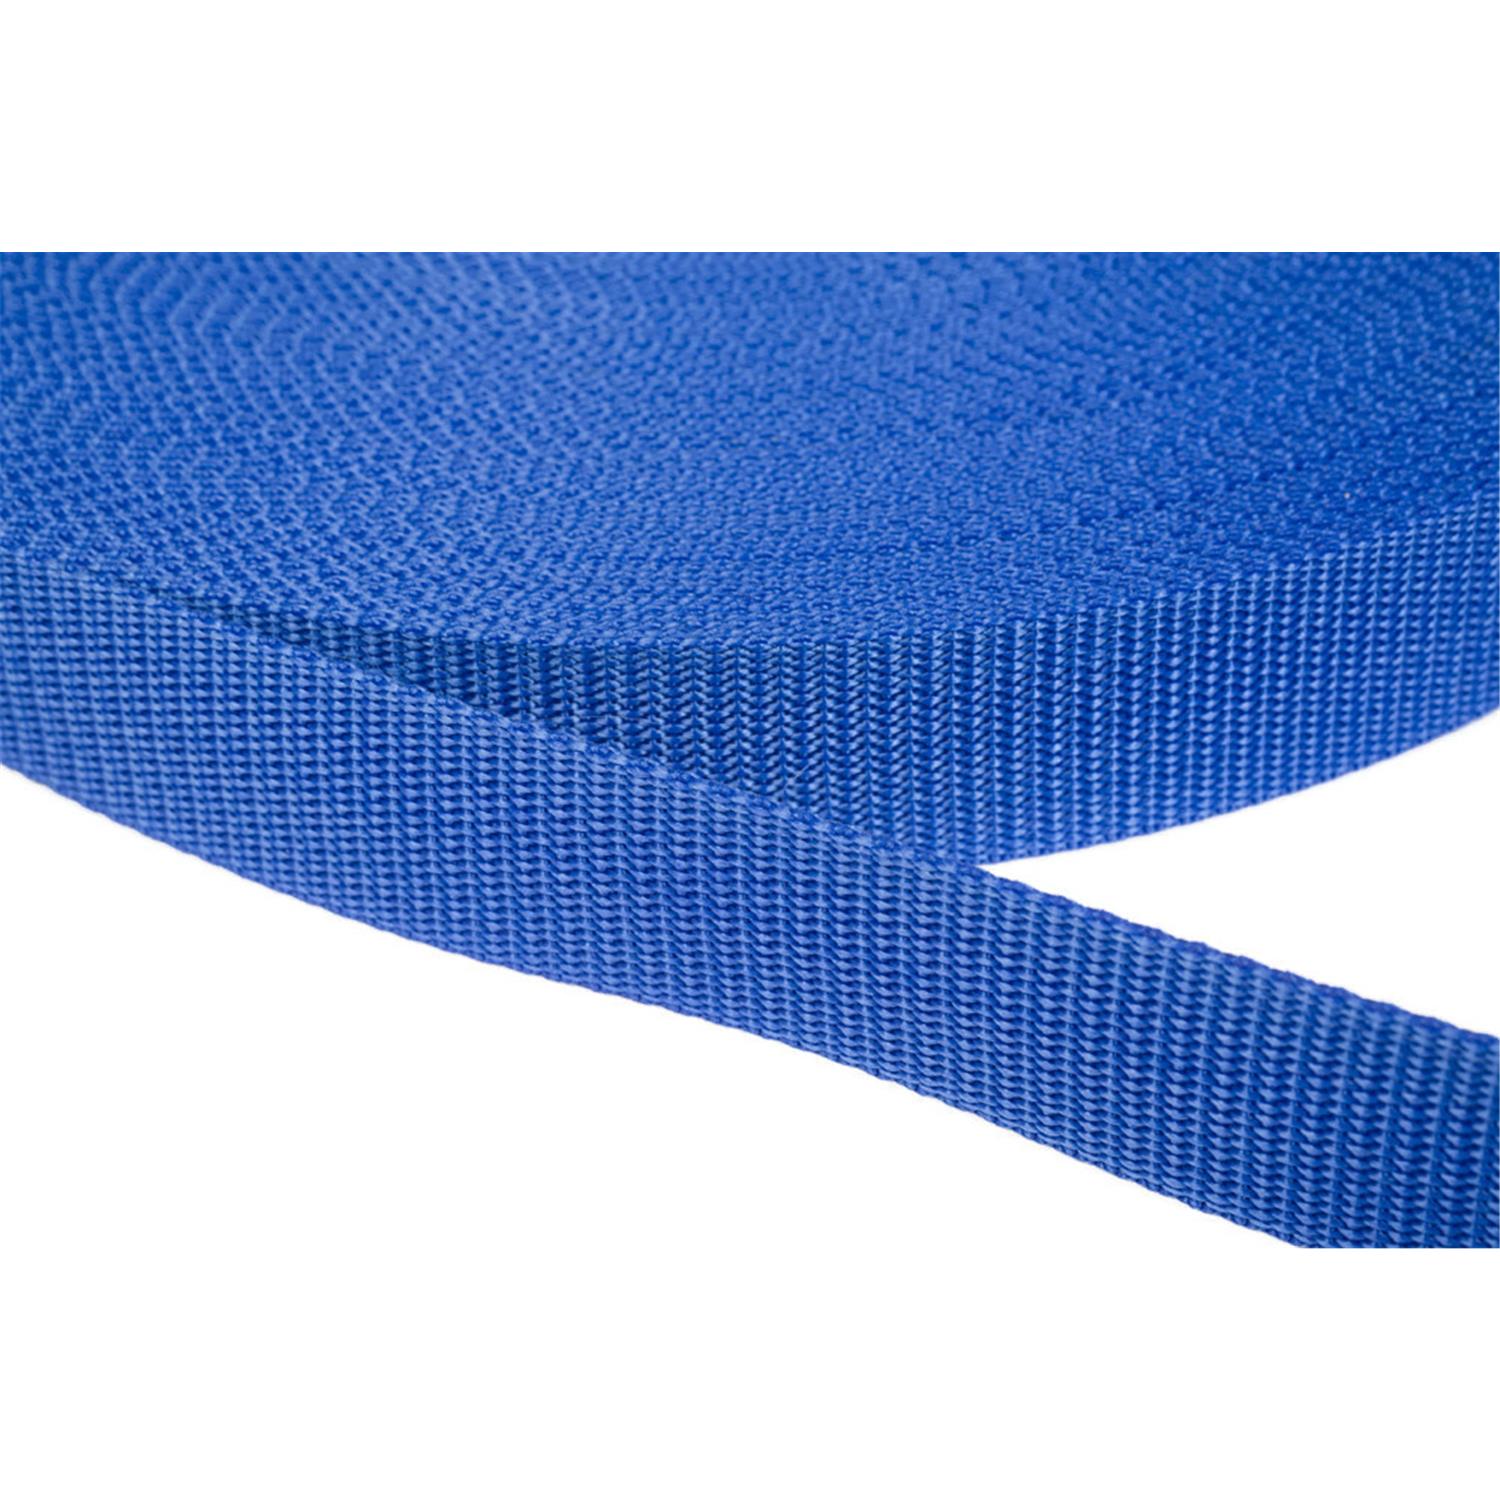 Gurtband 20mm breit aus Polypropylen in 41 Farben 26 - royalblau 12 Meter